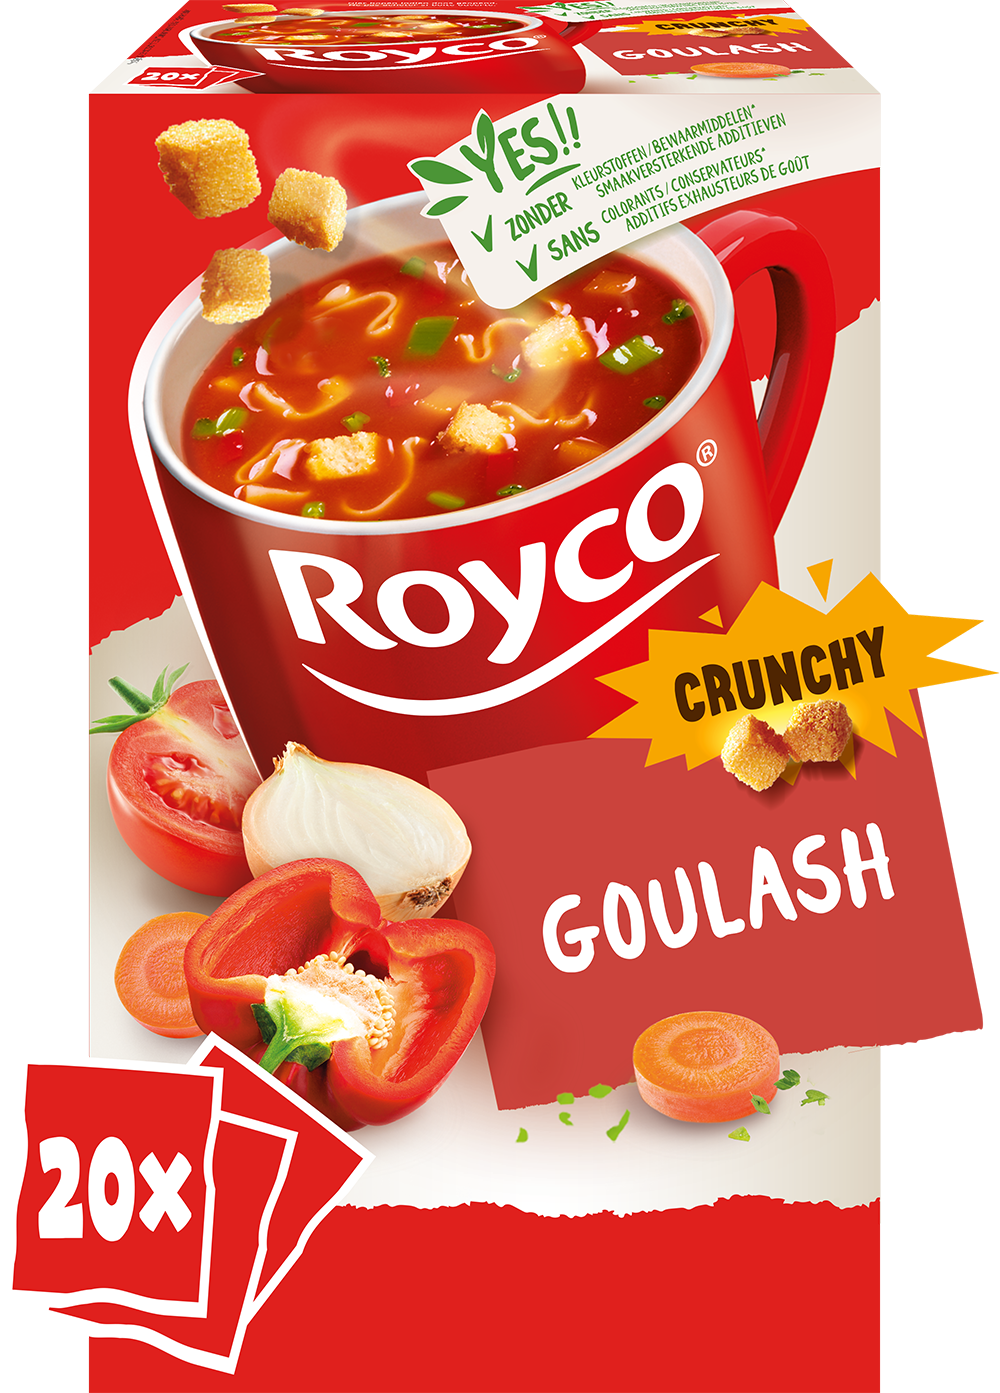 Royco crunchy goulash 